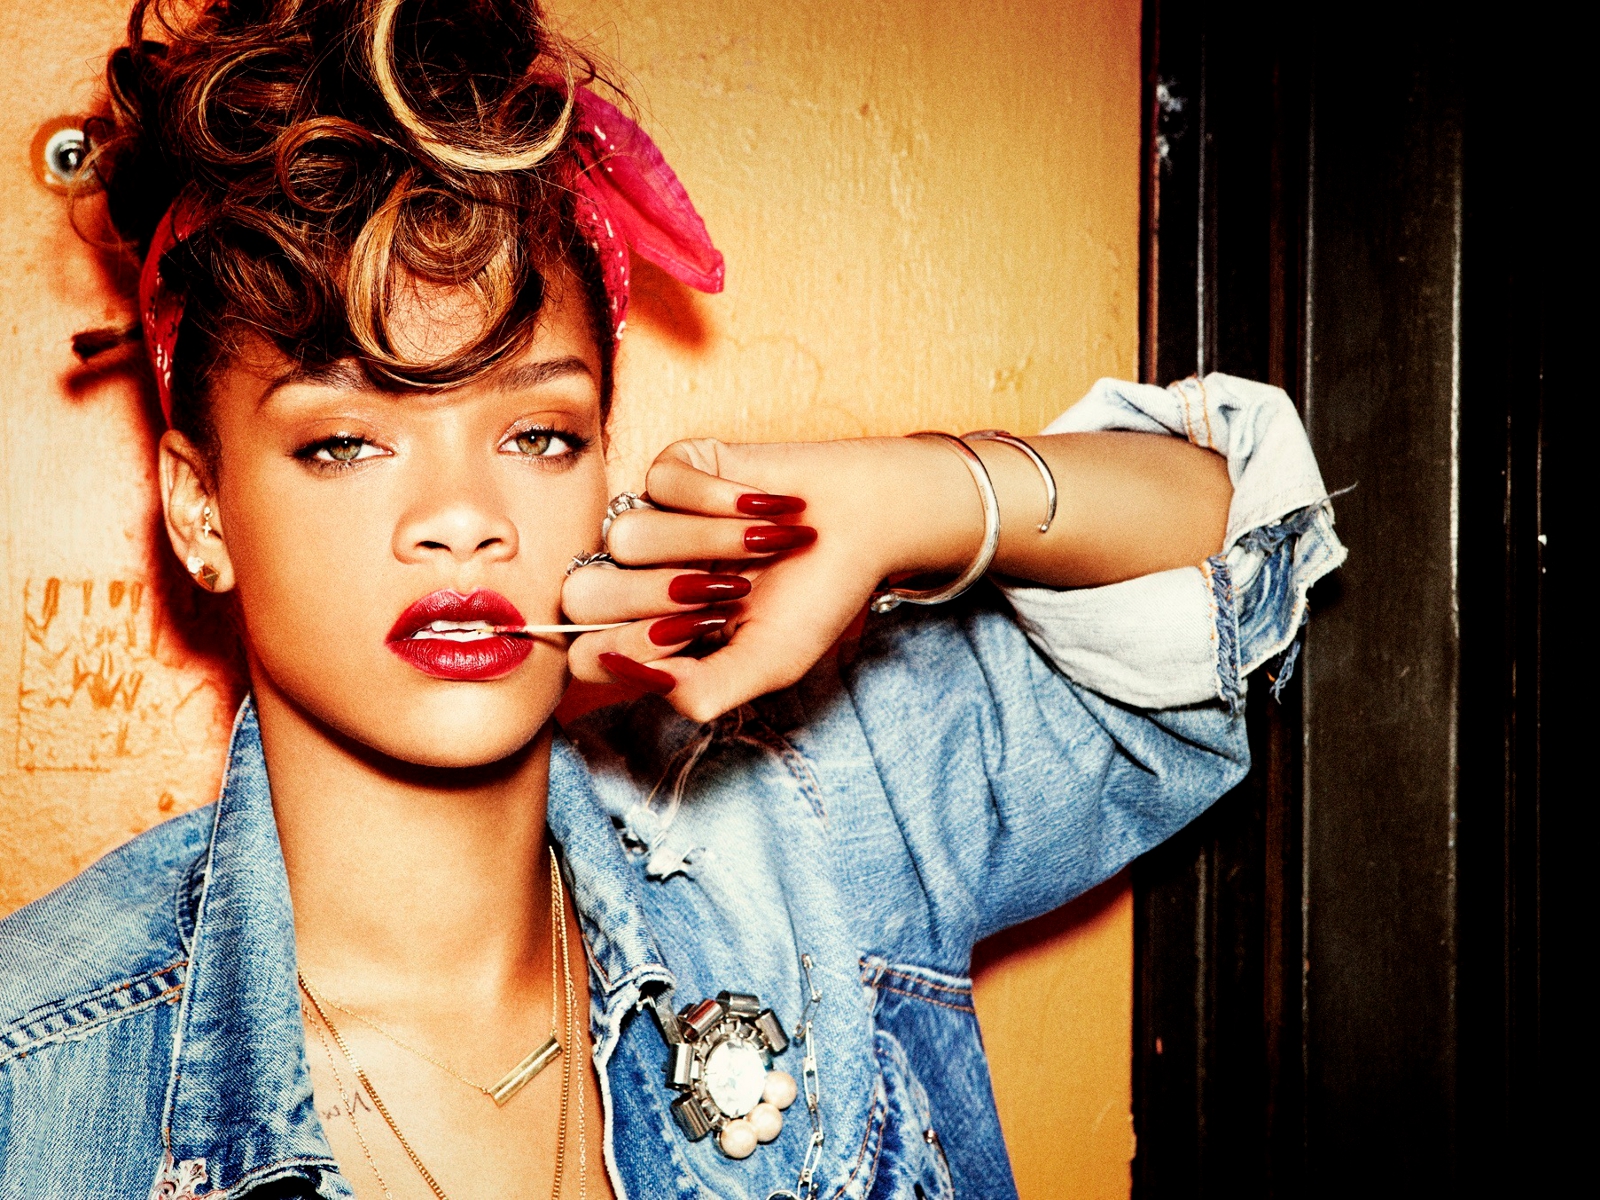 VIDEO: După 12 ani de carieră, Rihanna a reușit o MEGA-performanță. Ce s-a întâmplat cu hit-ul „Diamonds”?